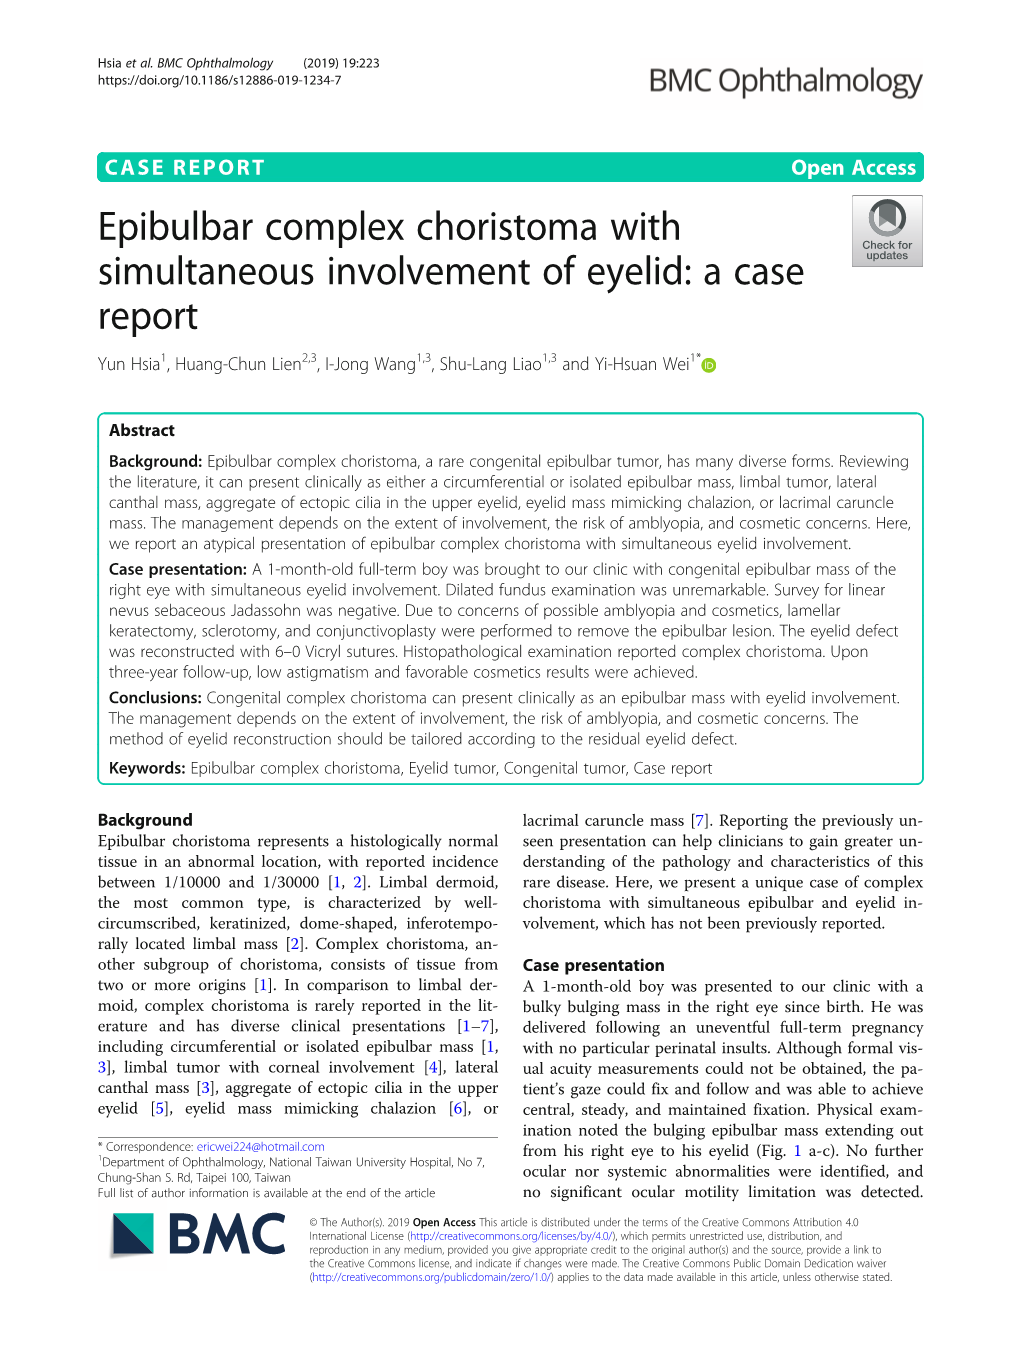 Epibulbar Complex Choristoma with Simultaneous Involvement of Eyelid: a Case Report Yun Hsia1, Huang-Chun Lien2,3, I-Jong Wang1,3, Shu-Lang Liao1,3 and Yi-Hsuan Wei1*